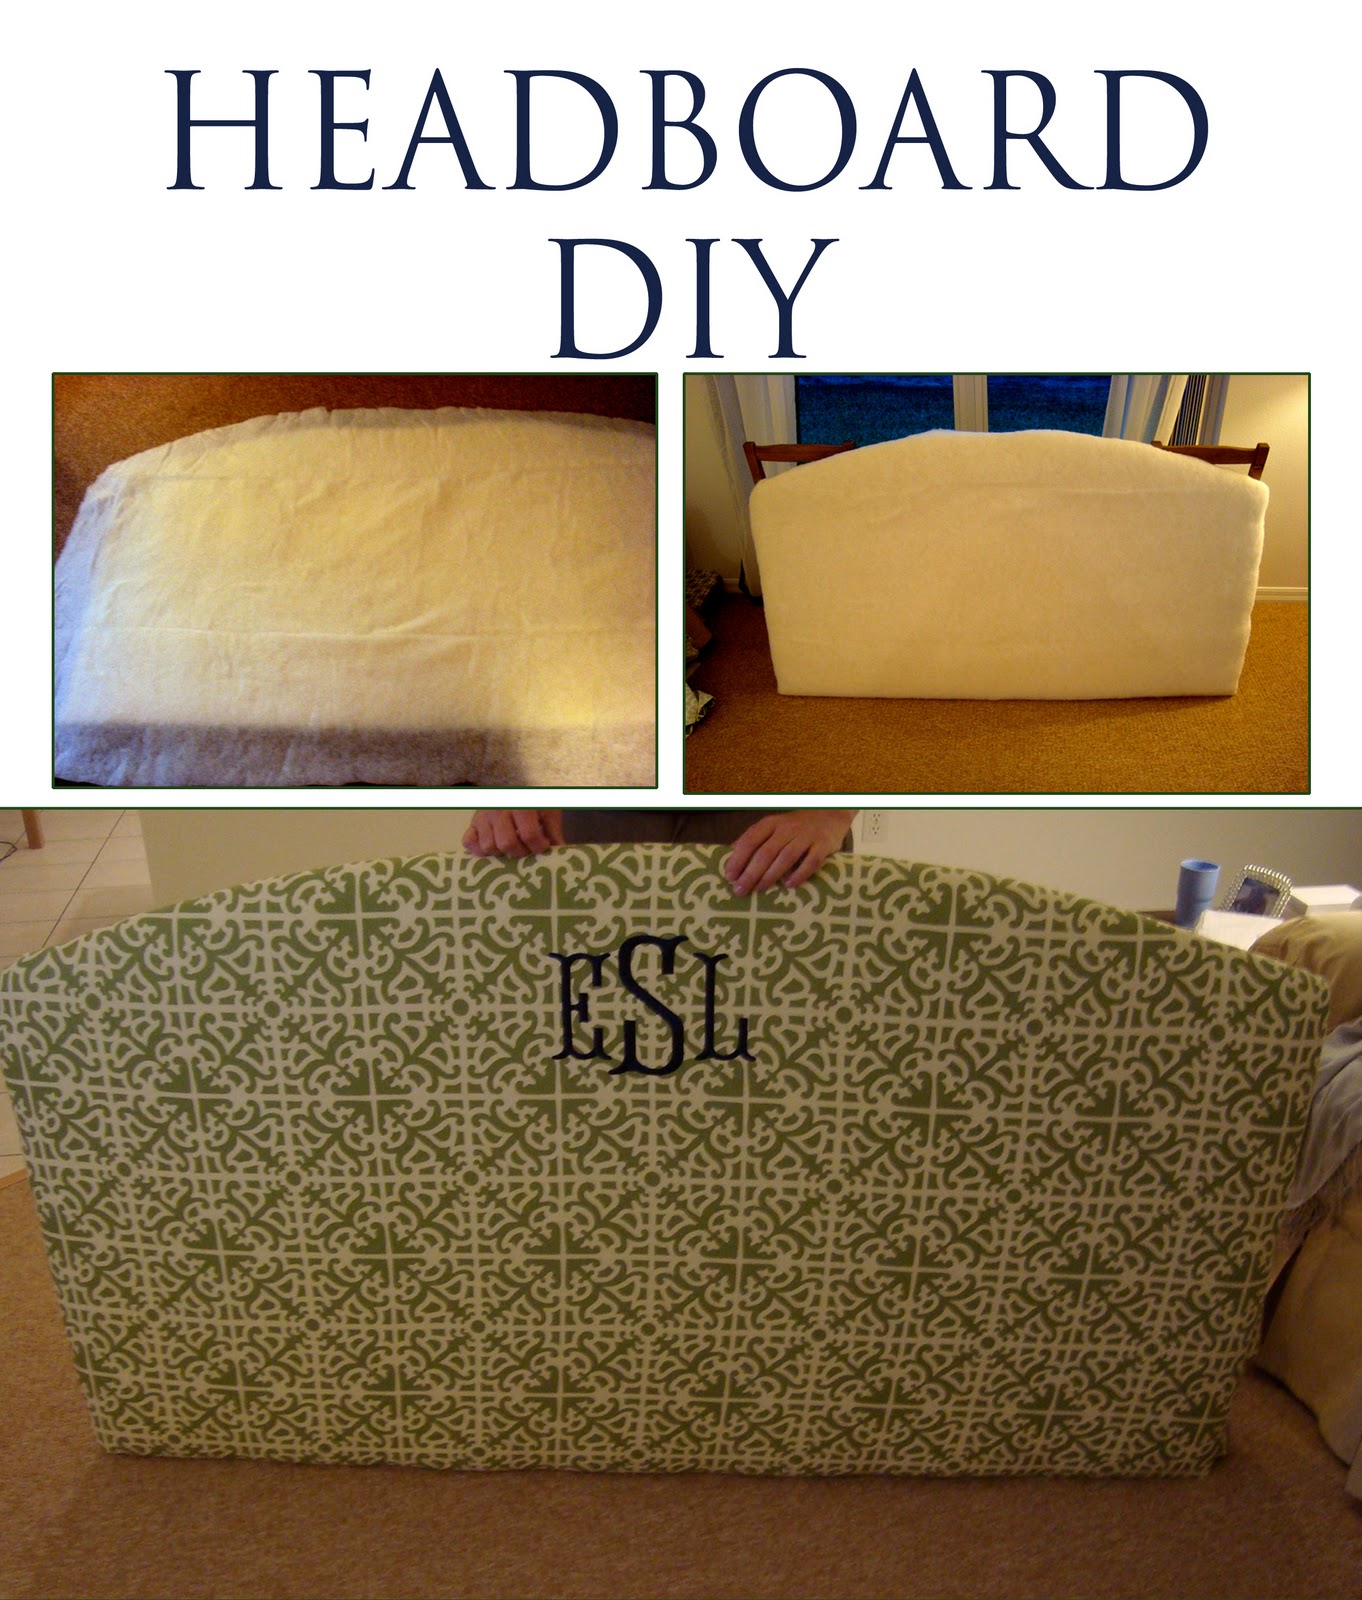 Headboard DIY | Heavens to Betsy